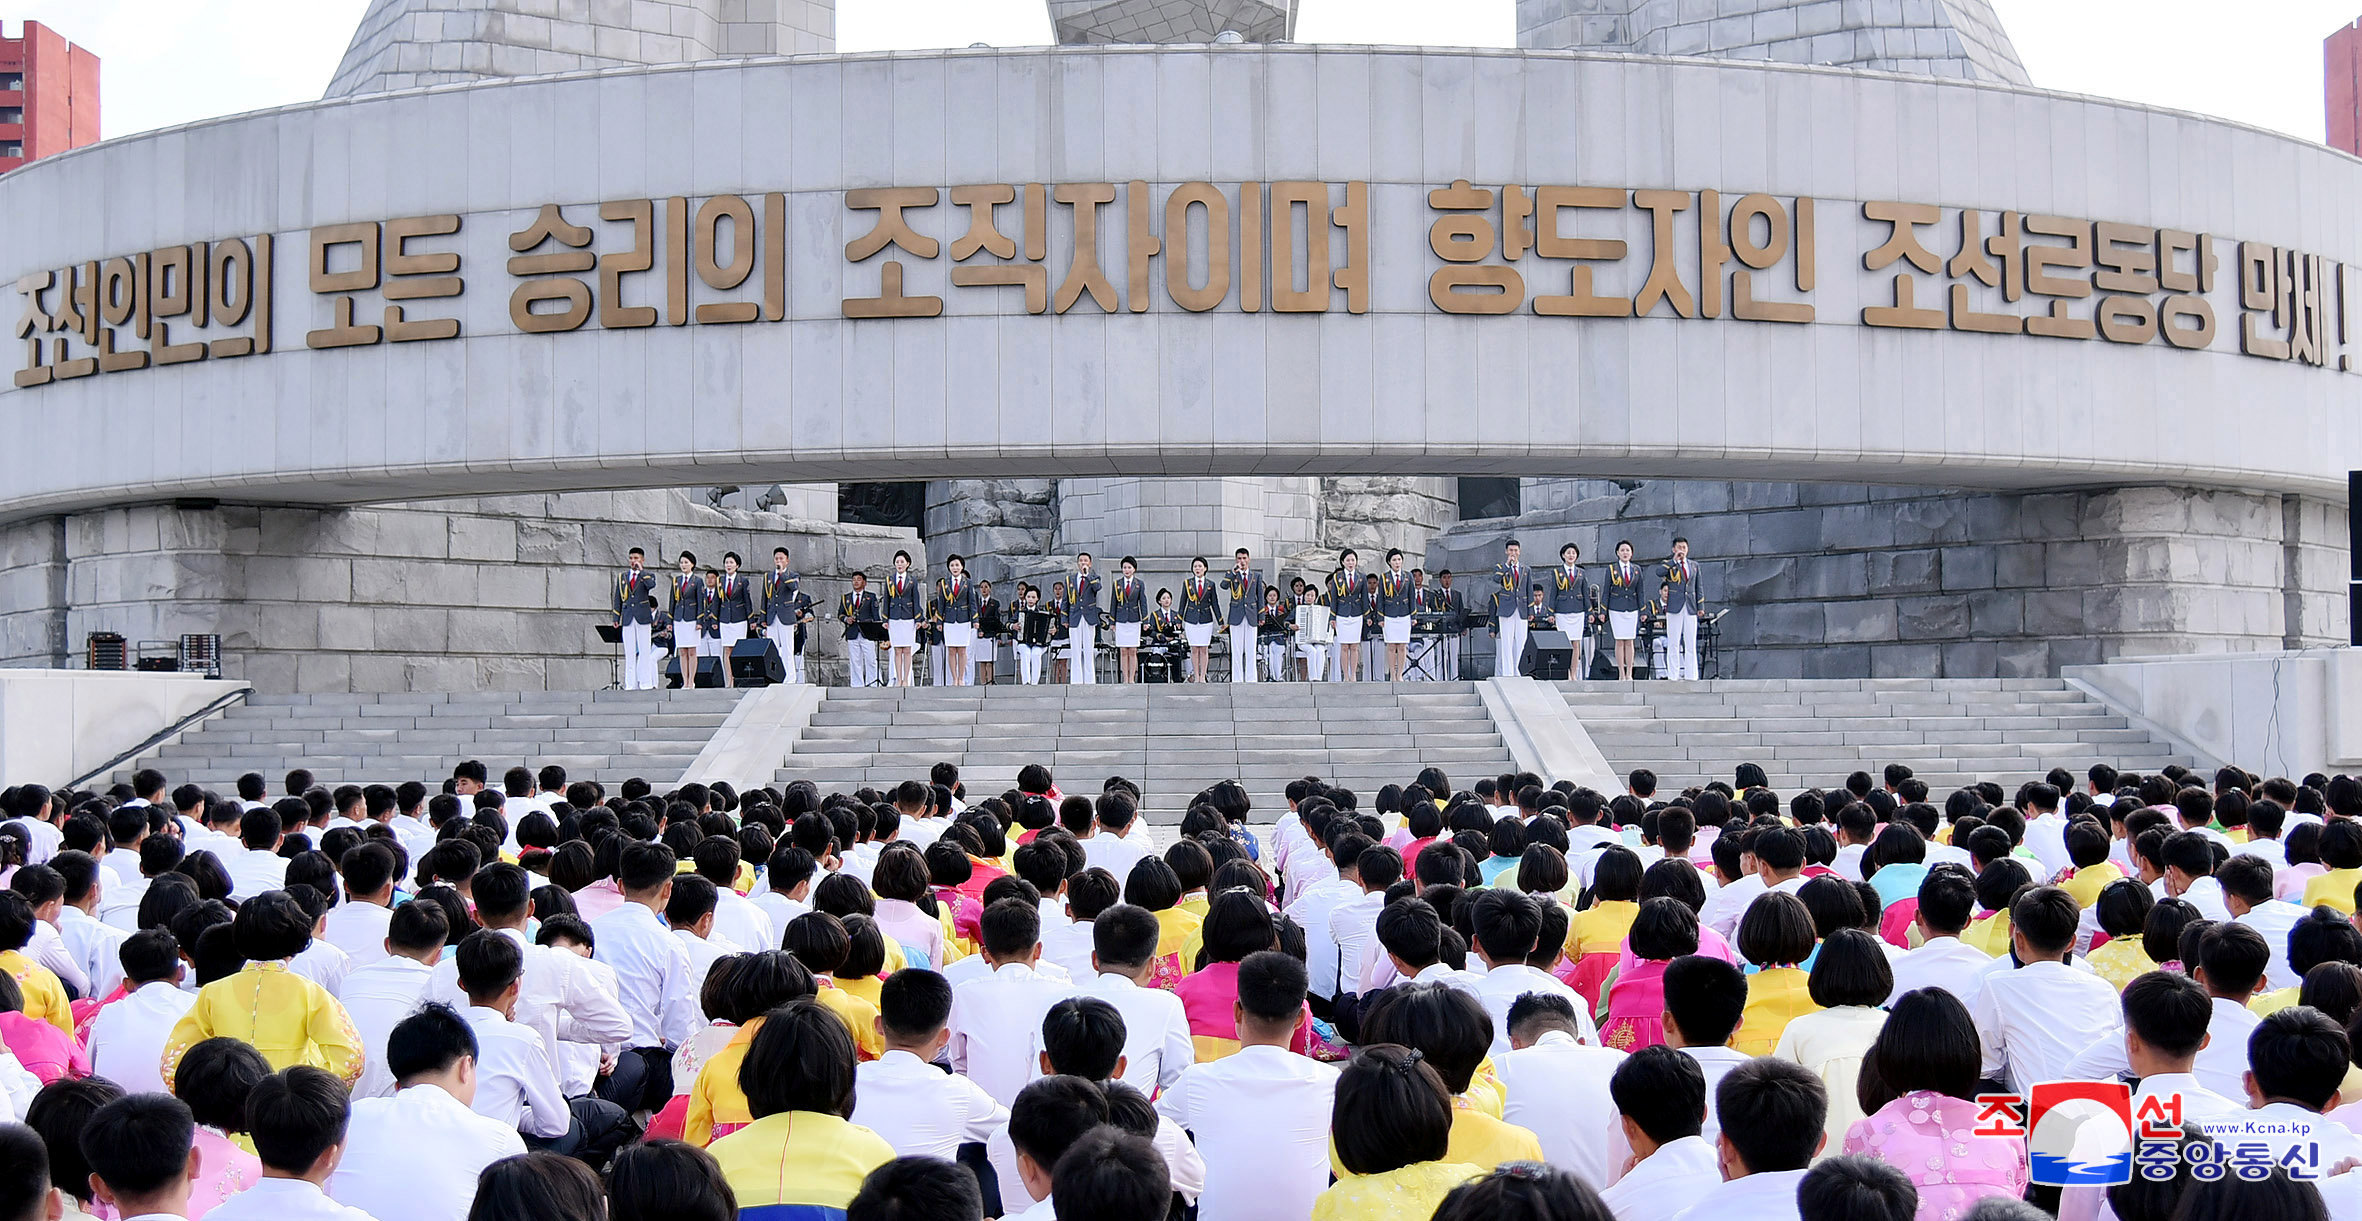 حضور كبير بين مواطنى كوريا الشمالية فى الاحتفال بذكرى تأسيس الحزب الحاكم